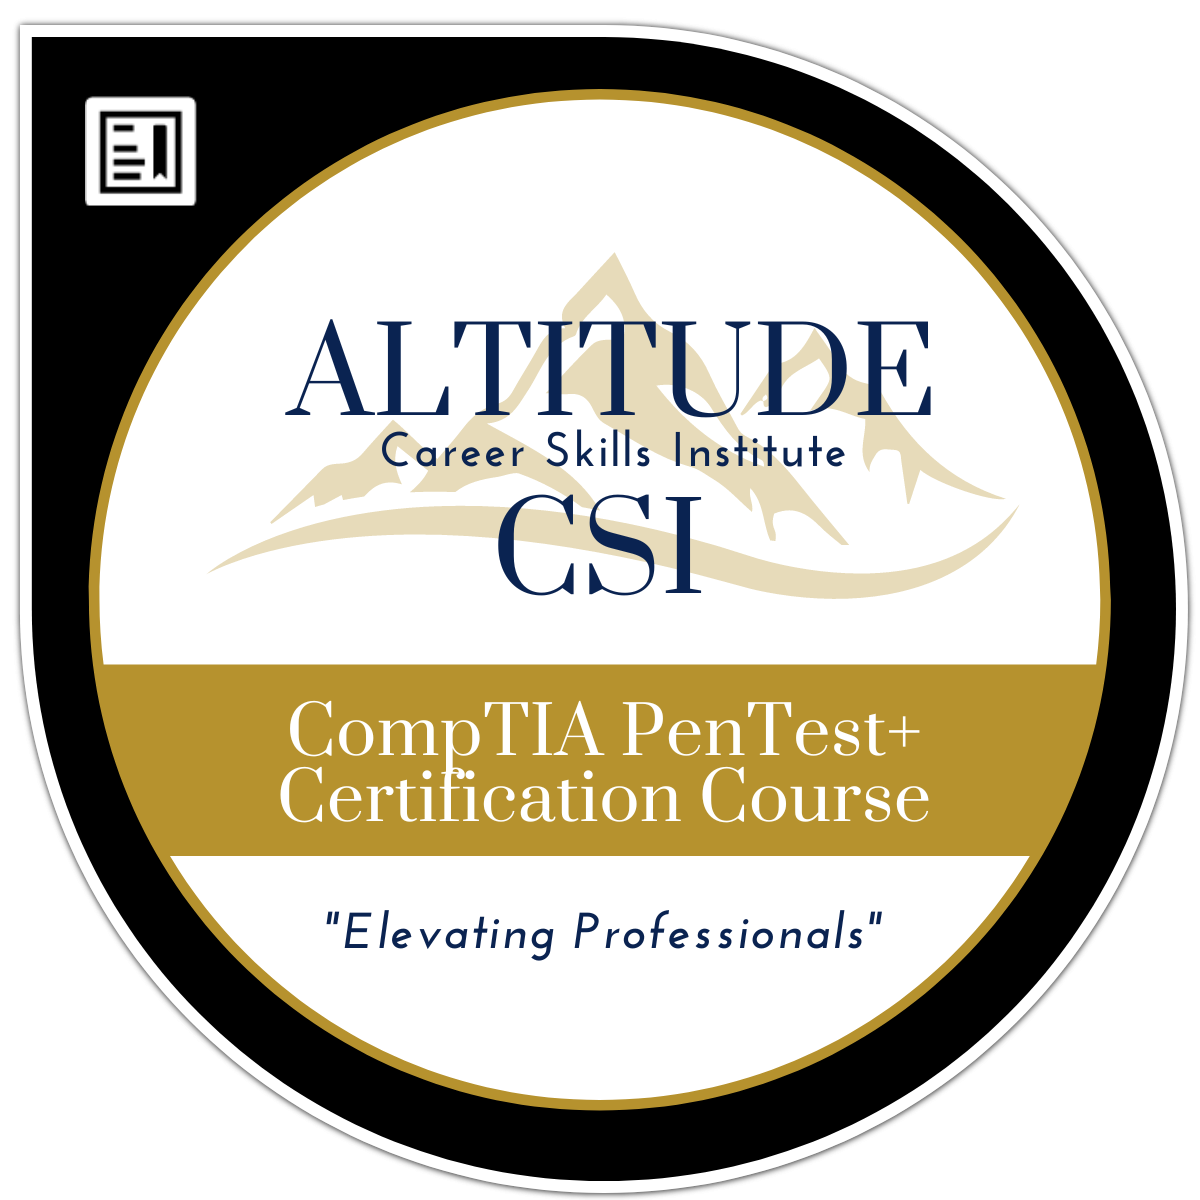 CompTIA PenTest+ Certification Course